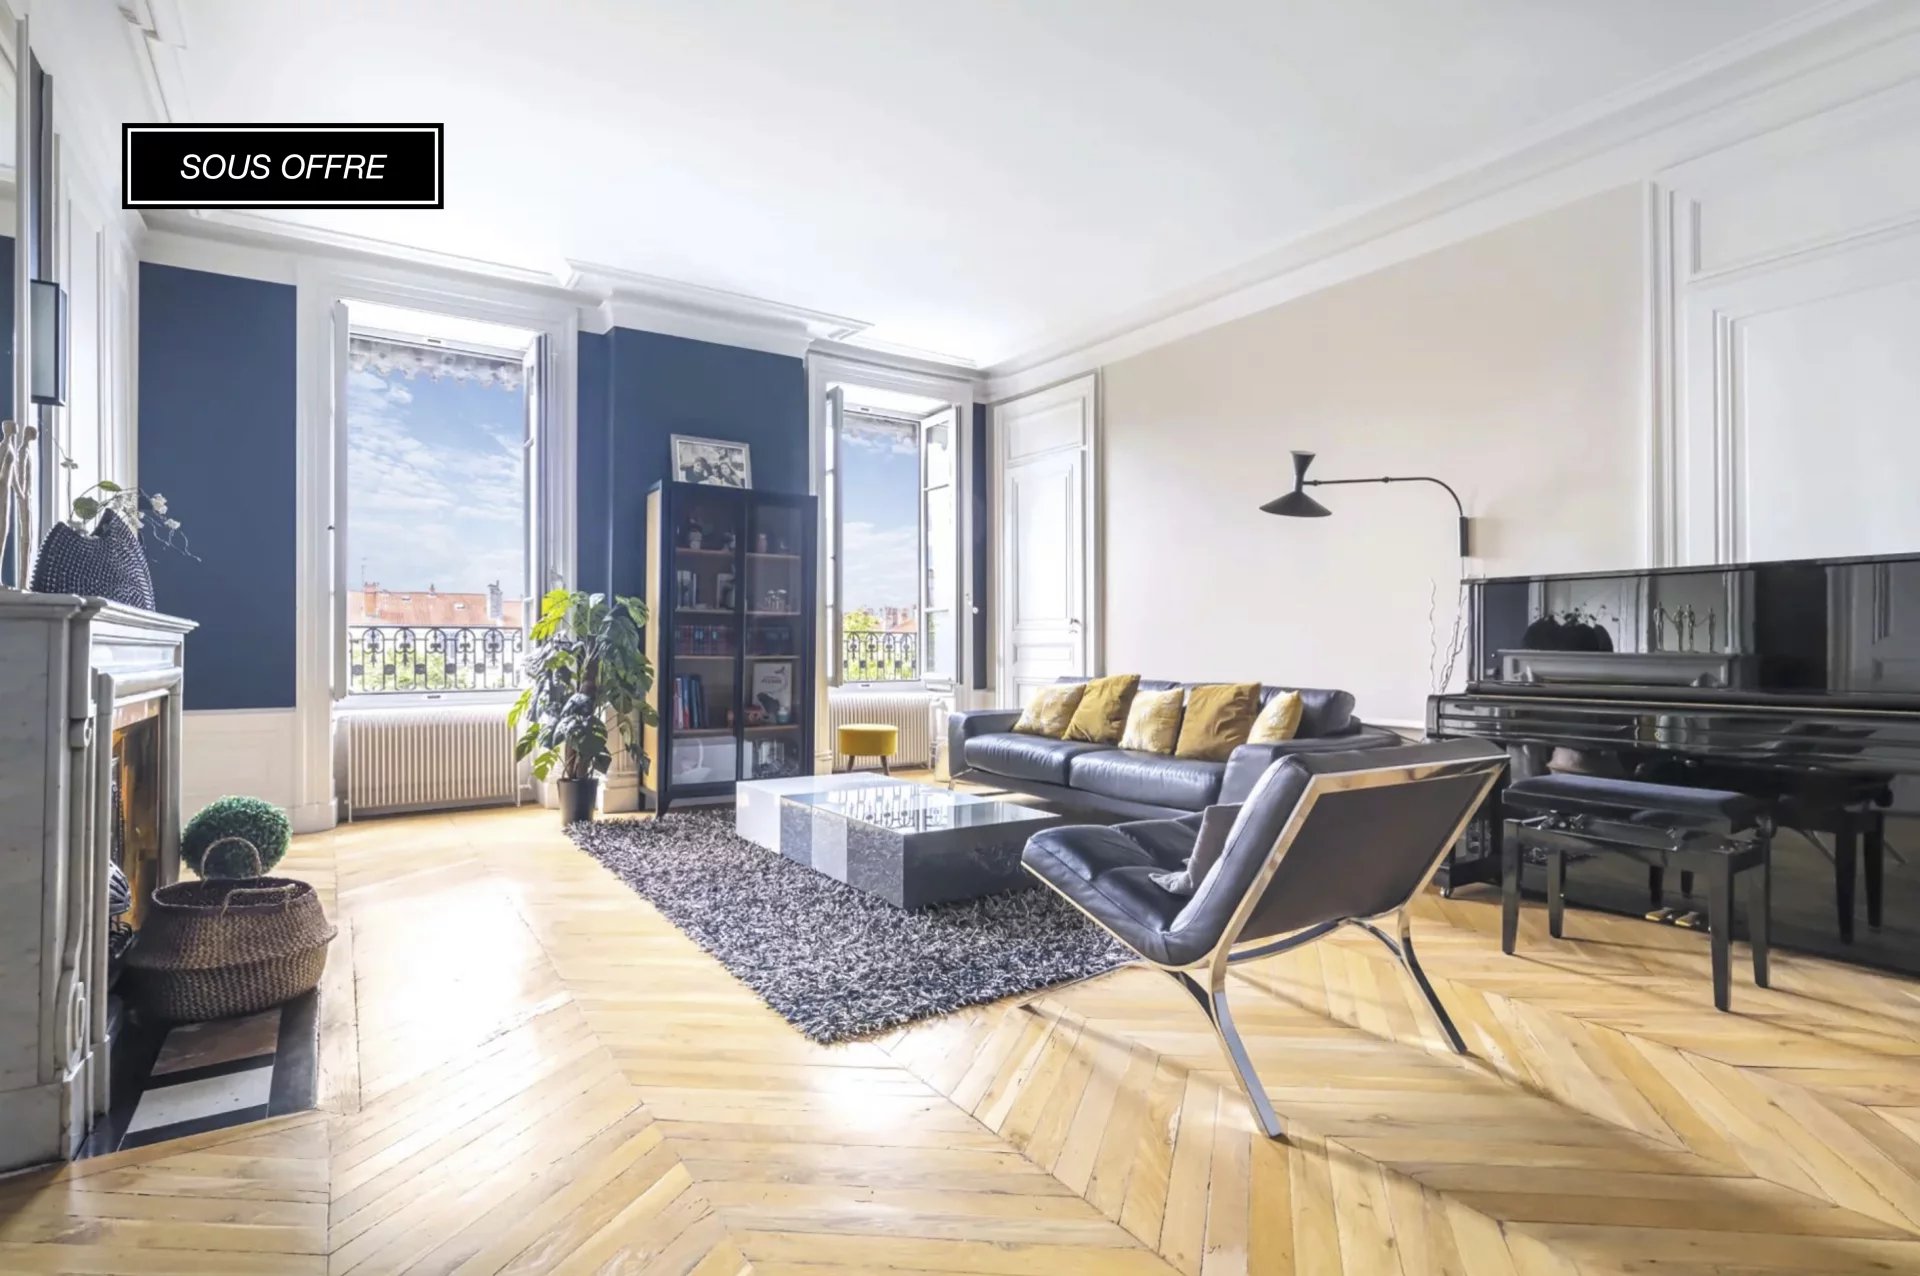 Sale Apartment - Lyon 6ème Foch